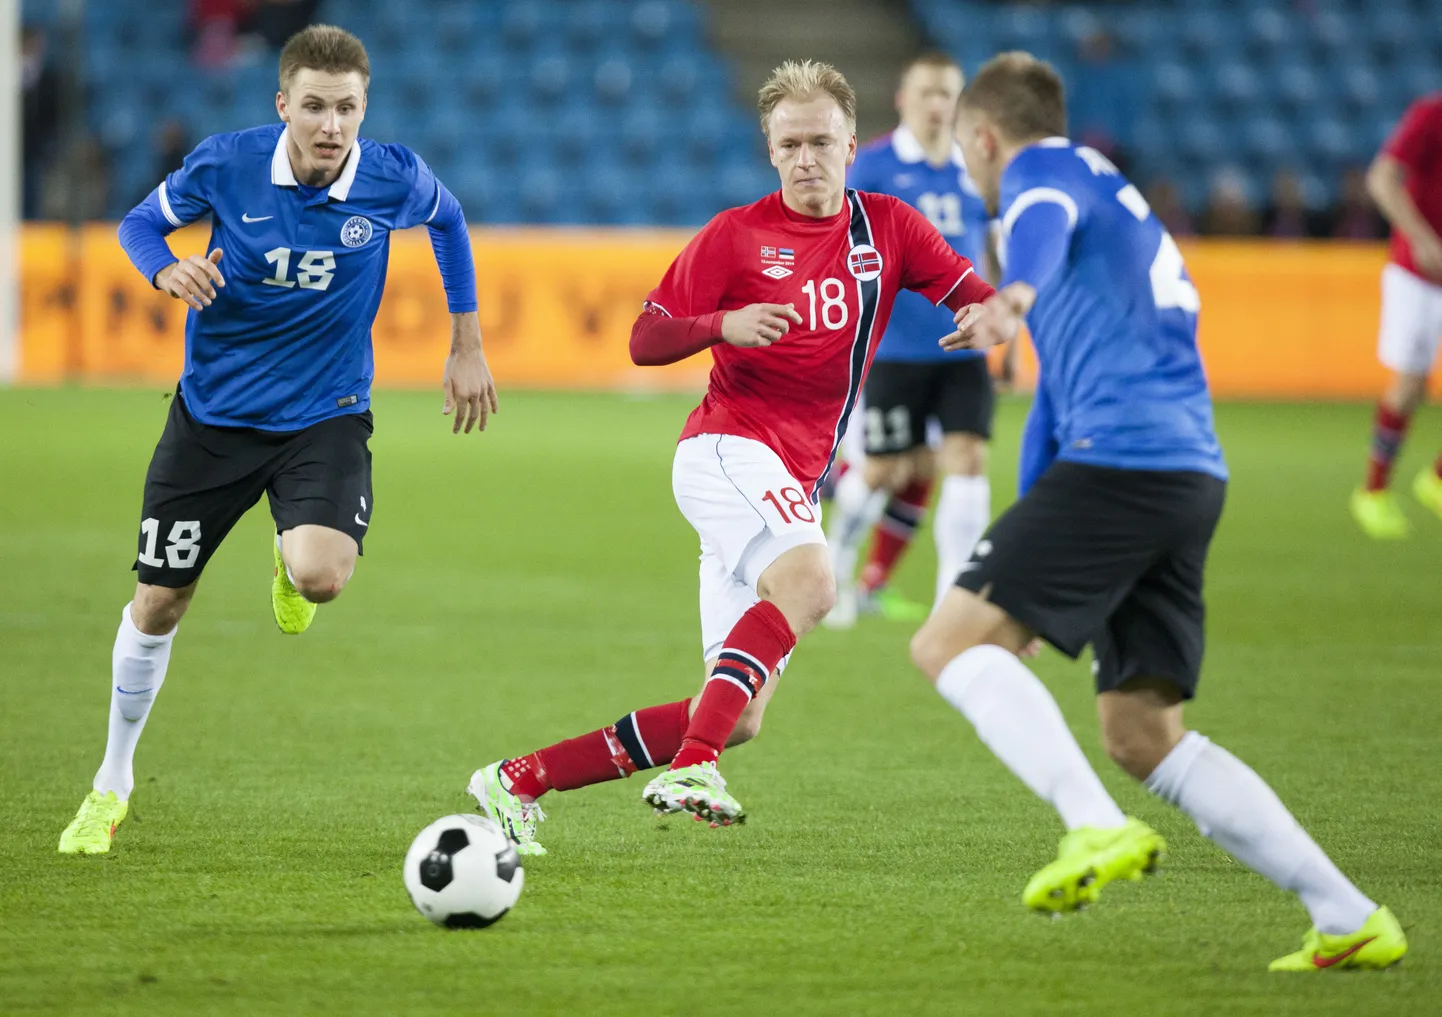 Матч между футболистами Эстонии и Норвегии осенью 2014 года (слева Карол Метс).